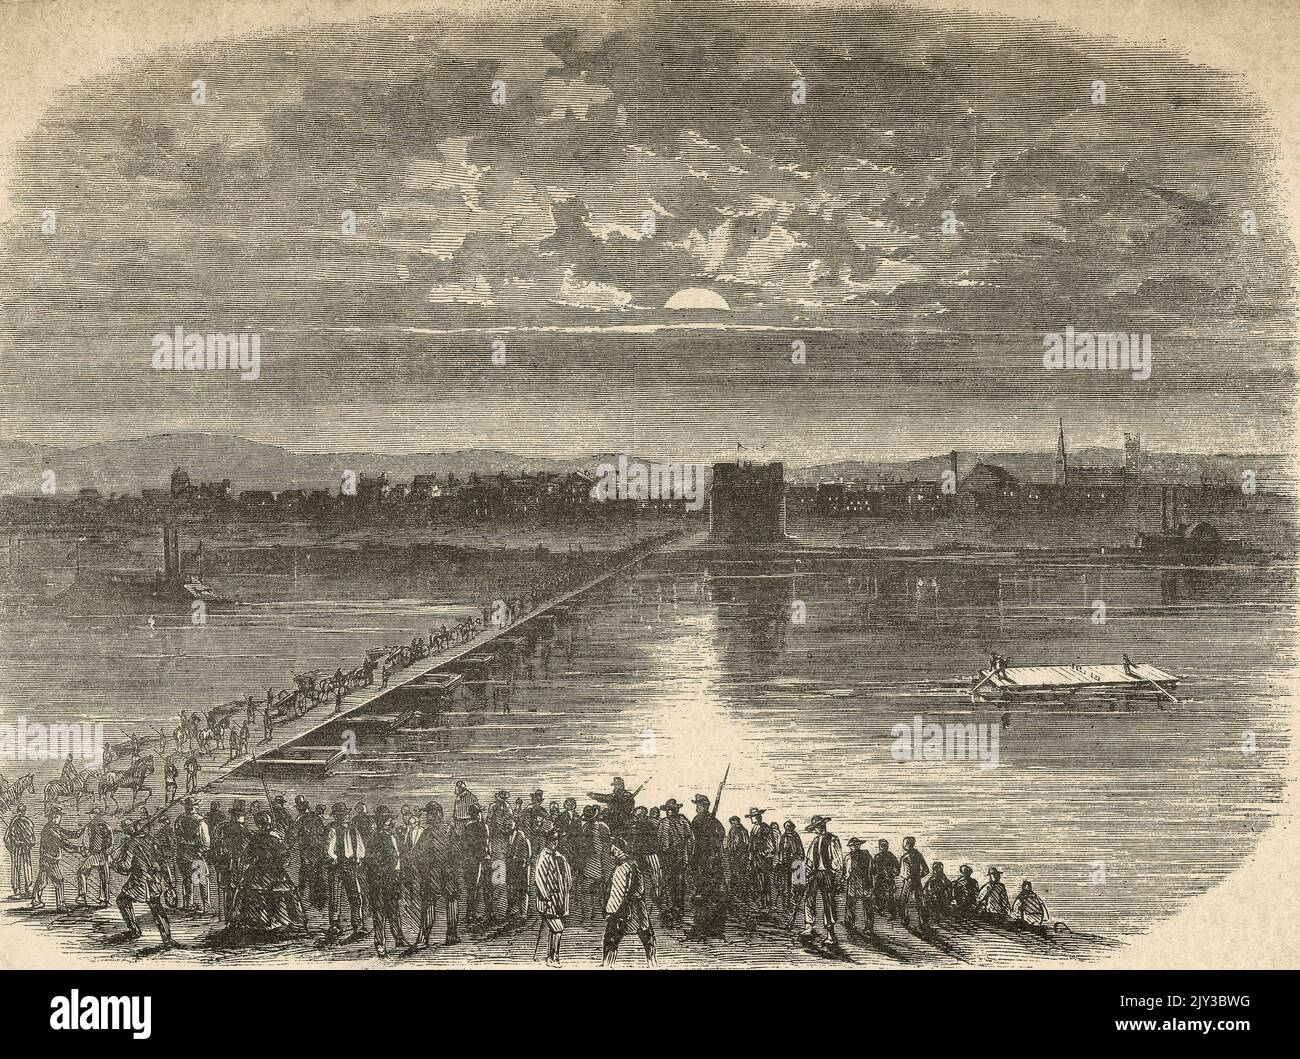 Des bénévoles traversent l'Ohio jusqu'à Covington sur un pont-ponton pendant la guerre de Sécession, 1862 Banque D'Images